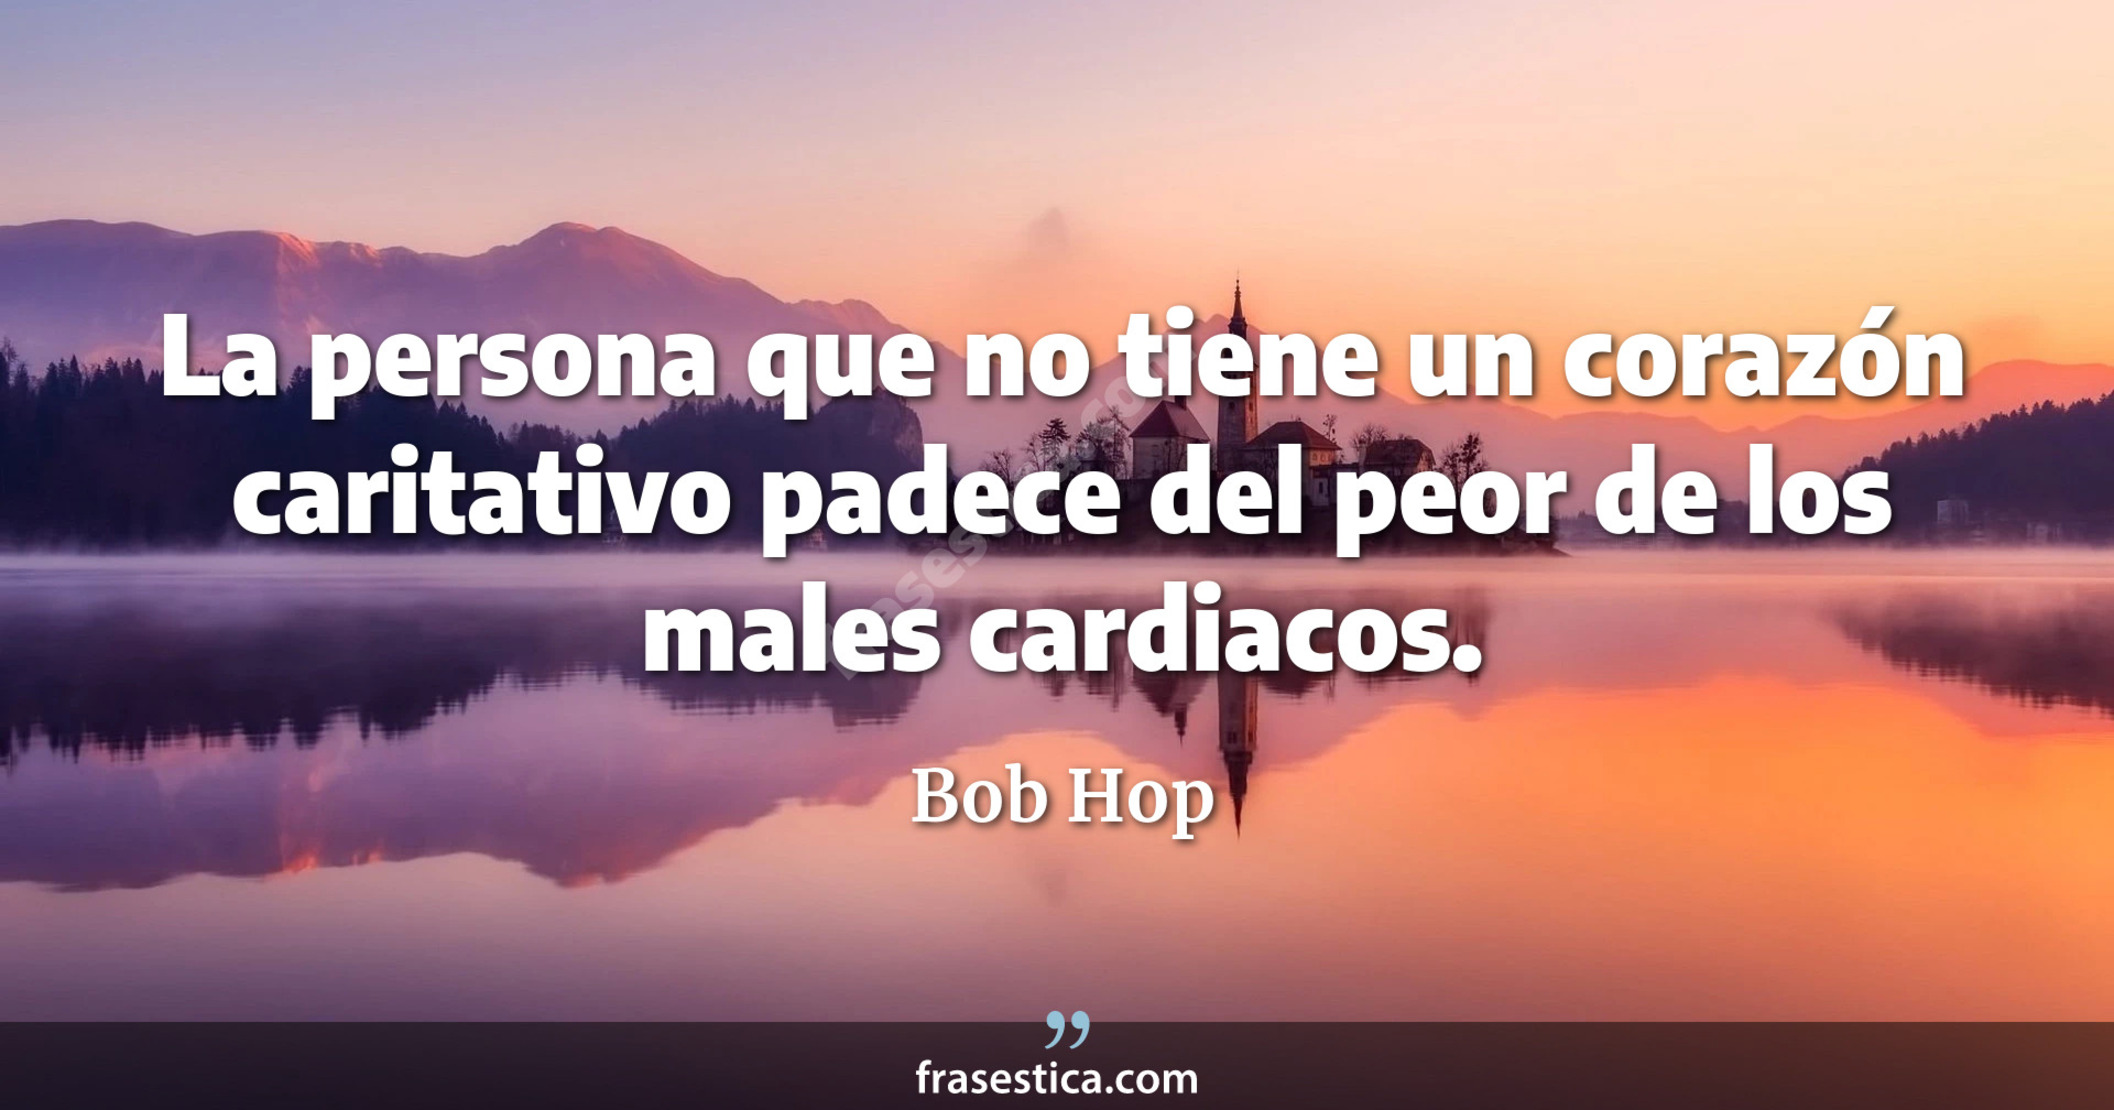 La persona que no tiene un corazón caritativo padece del peor de los males cardiacos. - Bob Hop